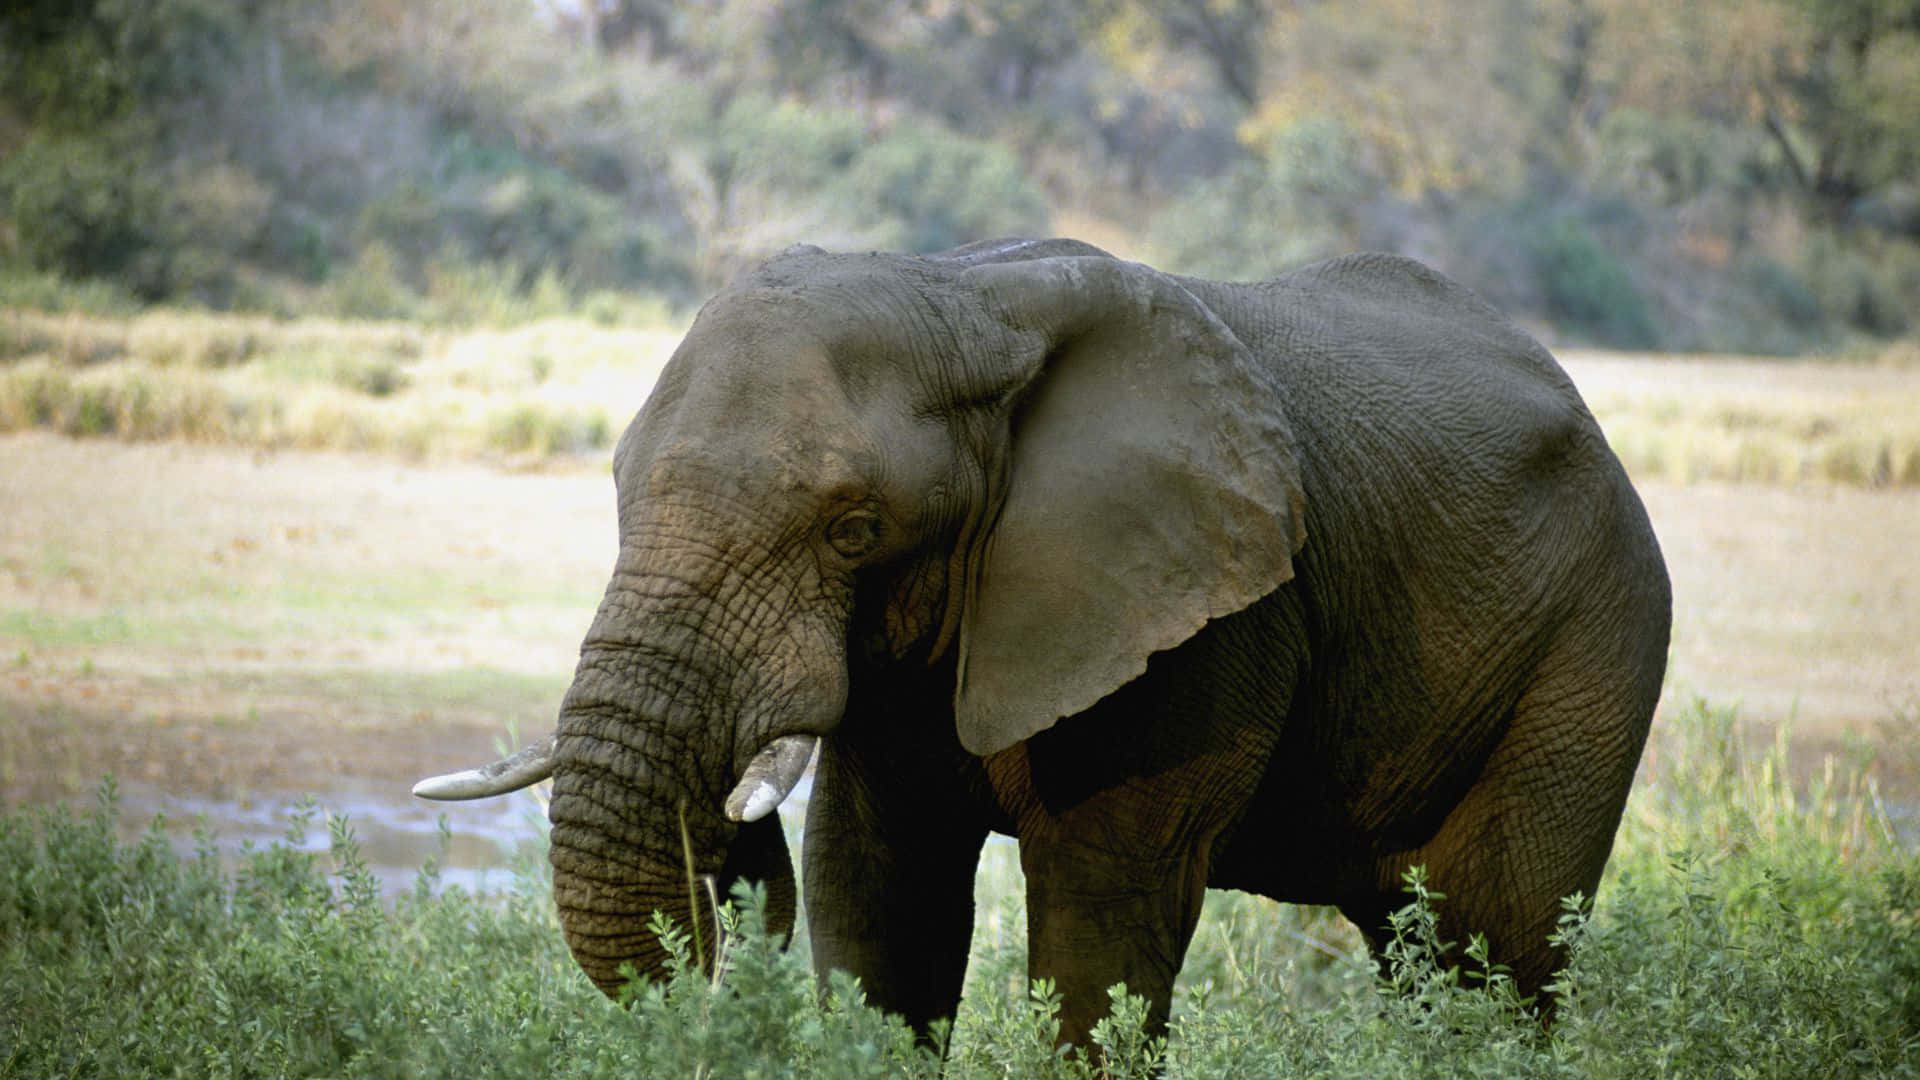 An elephant in the African savanna